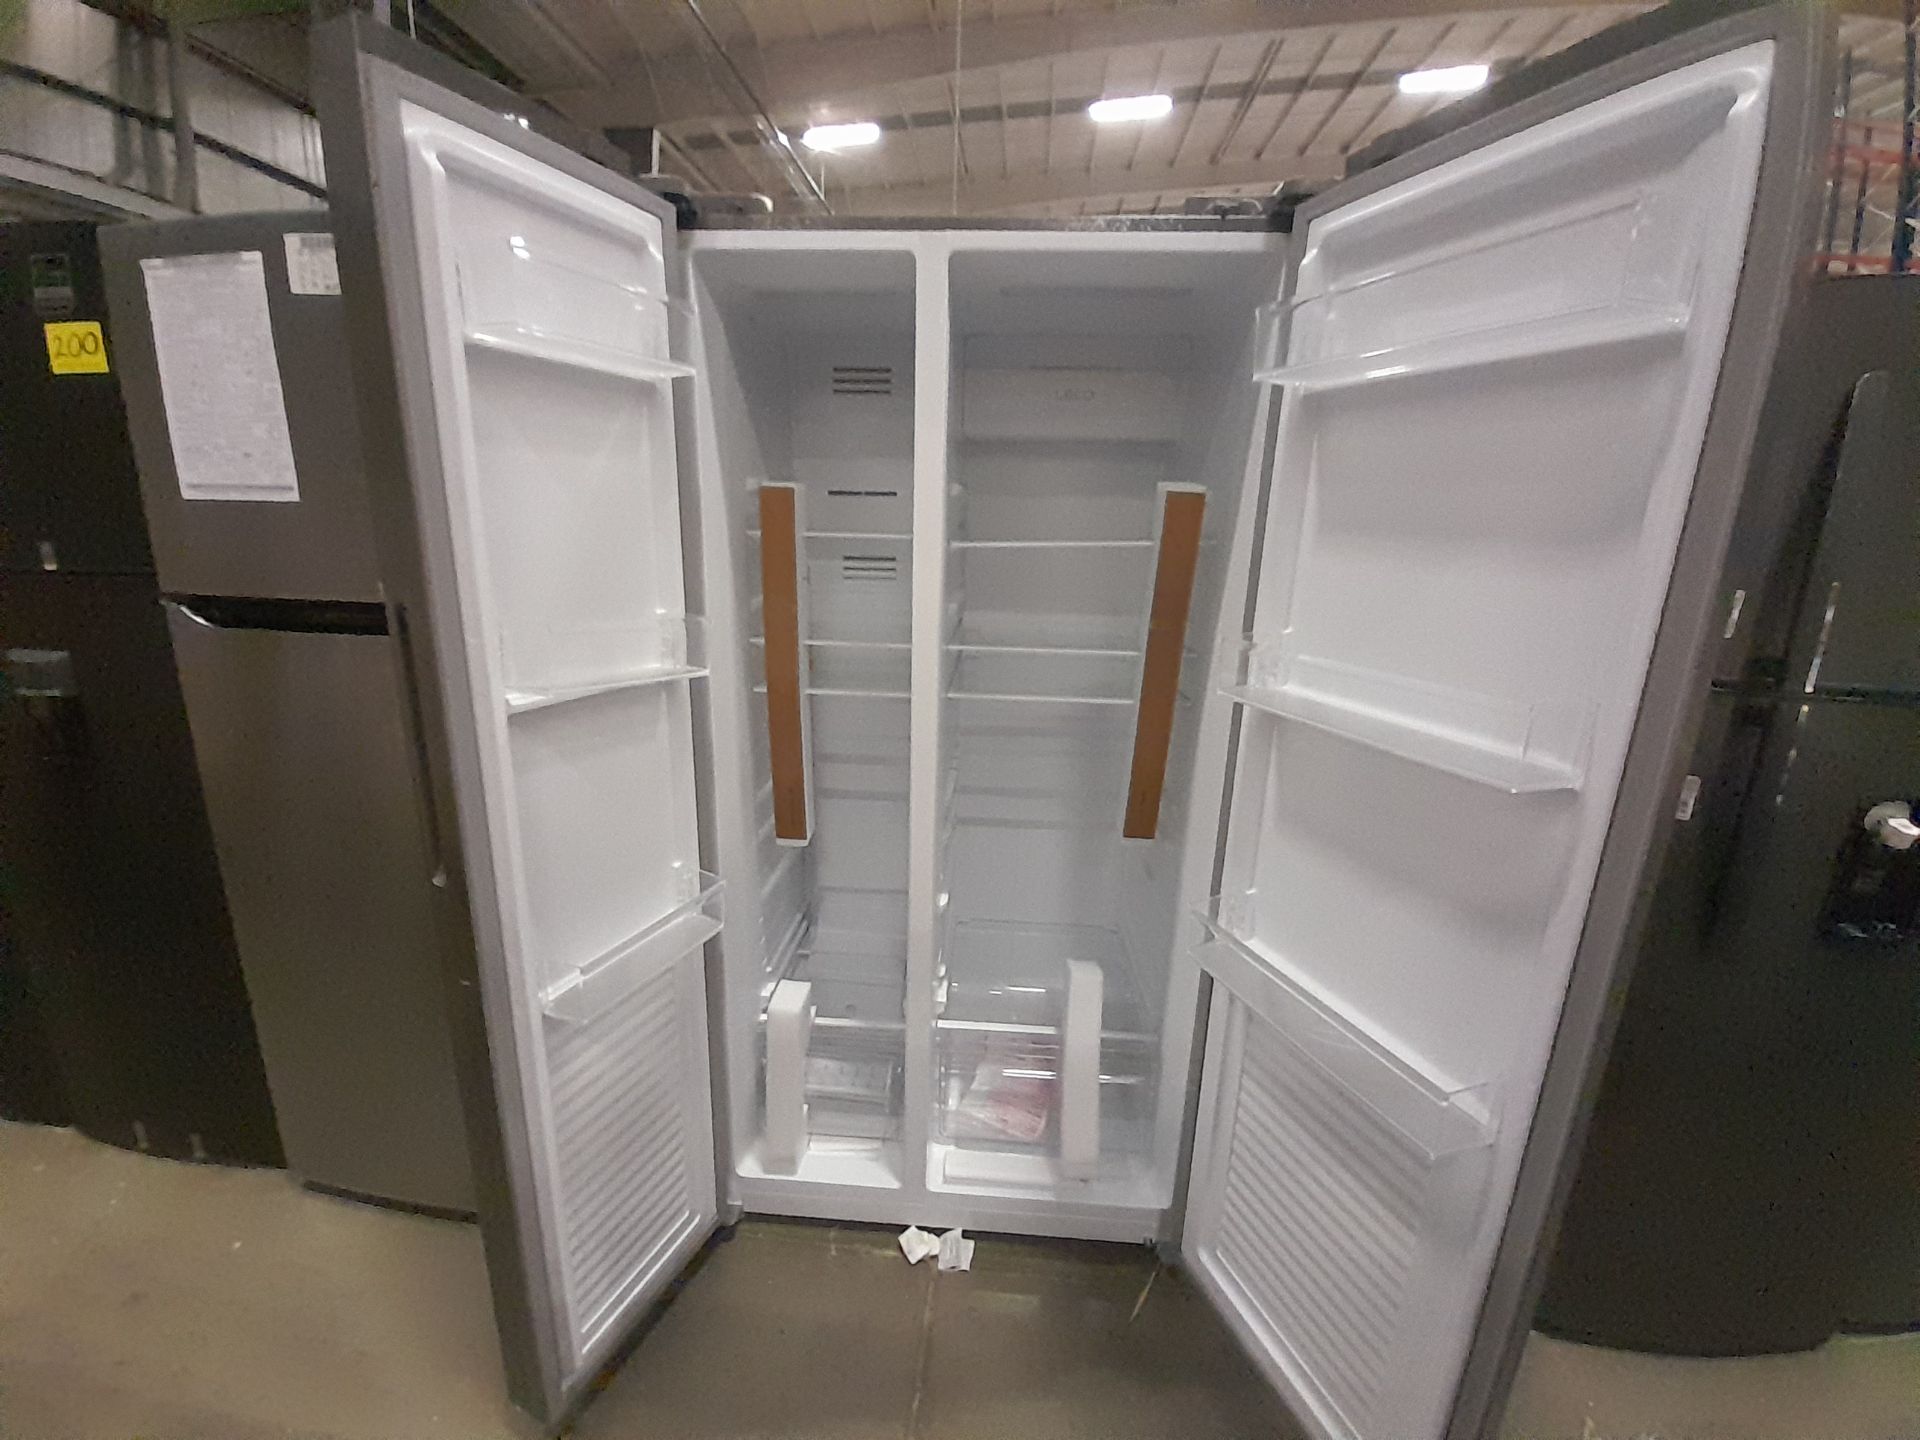 Lote de 1 Refrigerador Marca OSTER, Modelo SBSME20, Serie ND, Color GRIS (No se asegura su func - Image 4 of 7